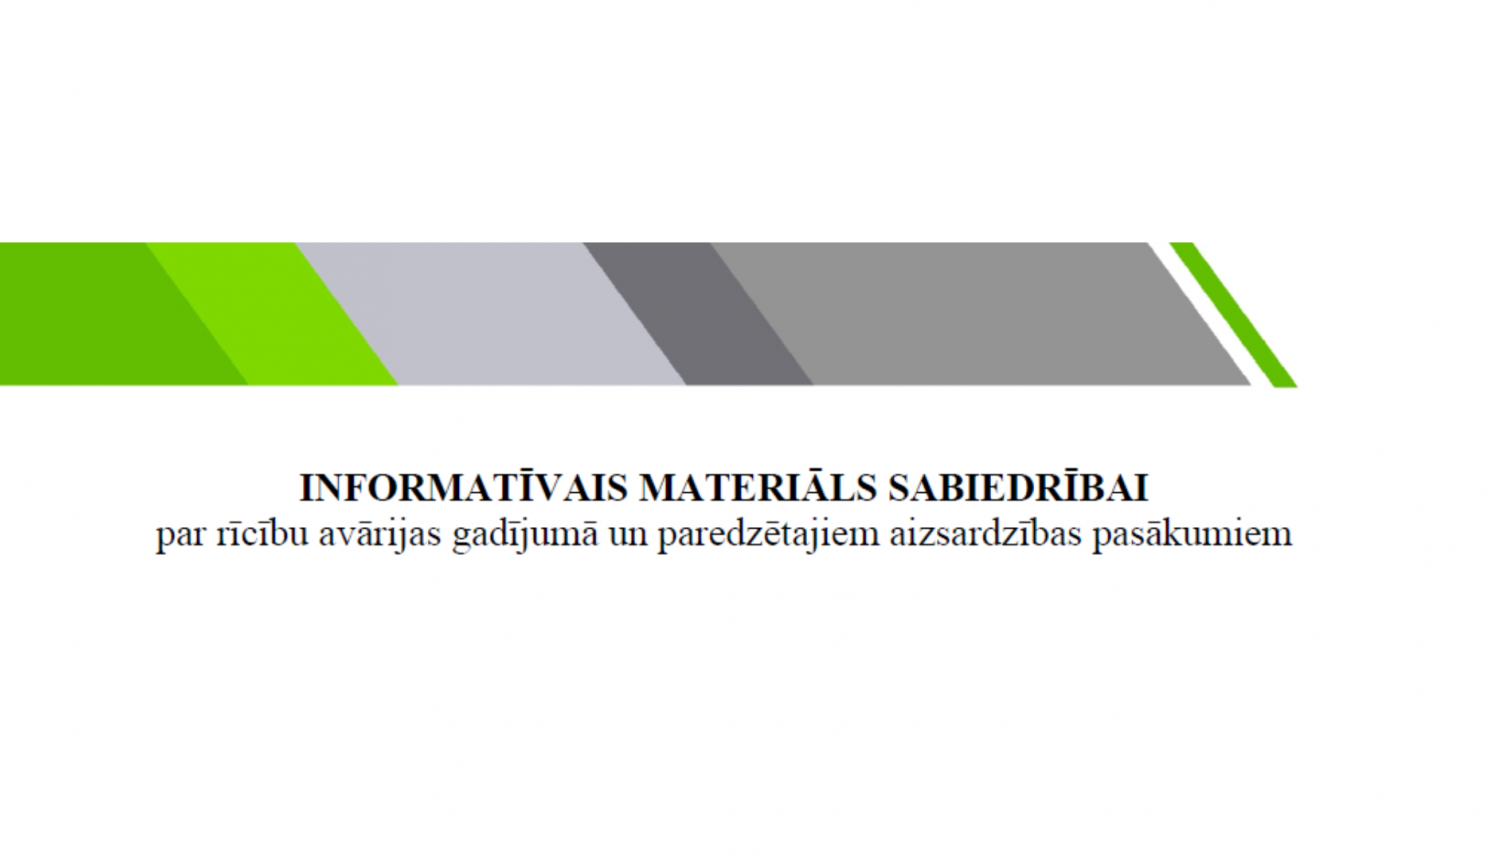 Informatīvais materiāls par rīcību avārijas gadījumā dabasgāzes pārvades sistēmas objektos un paredzētajiem aizsardzības pasākumiem